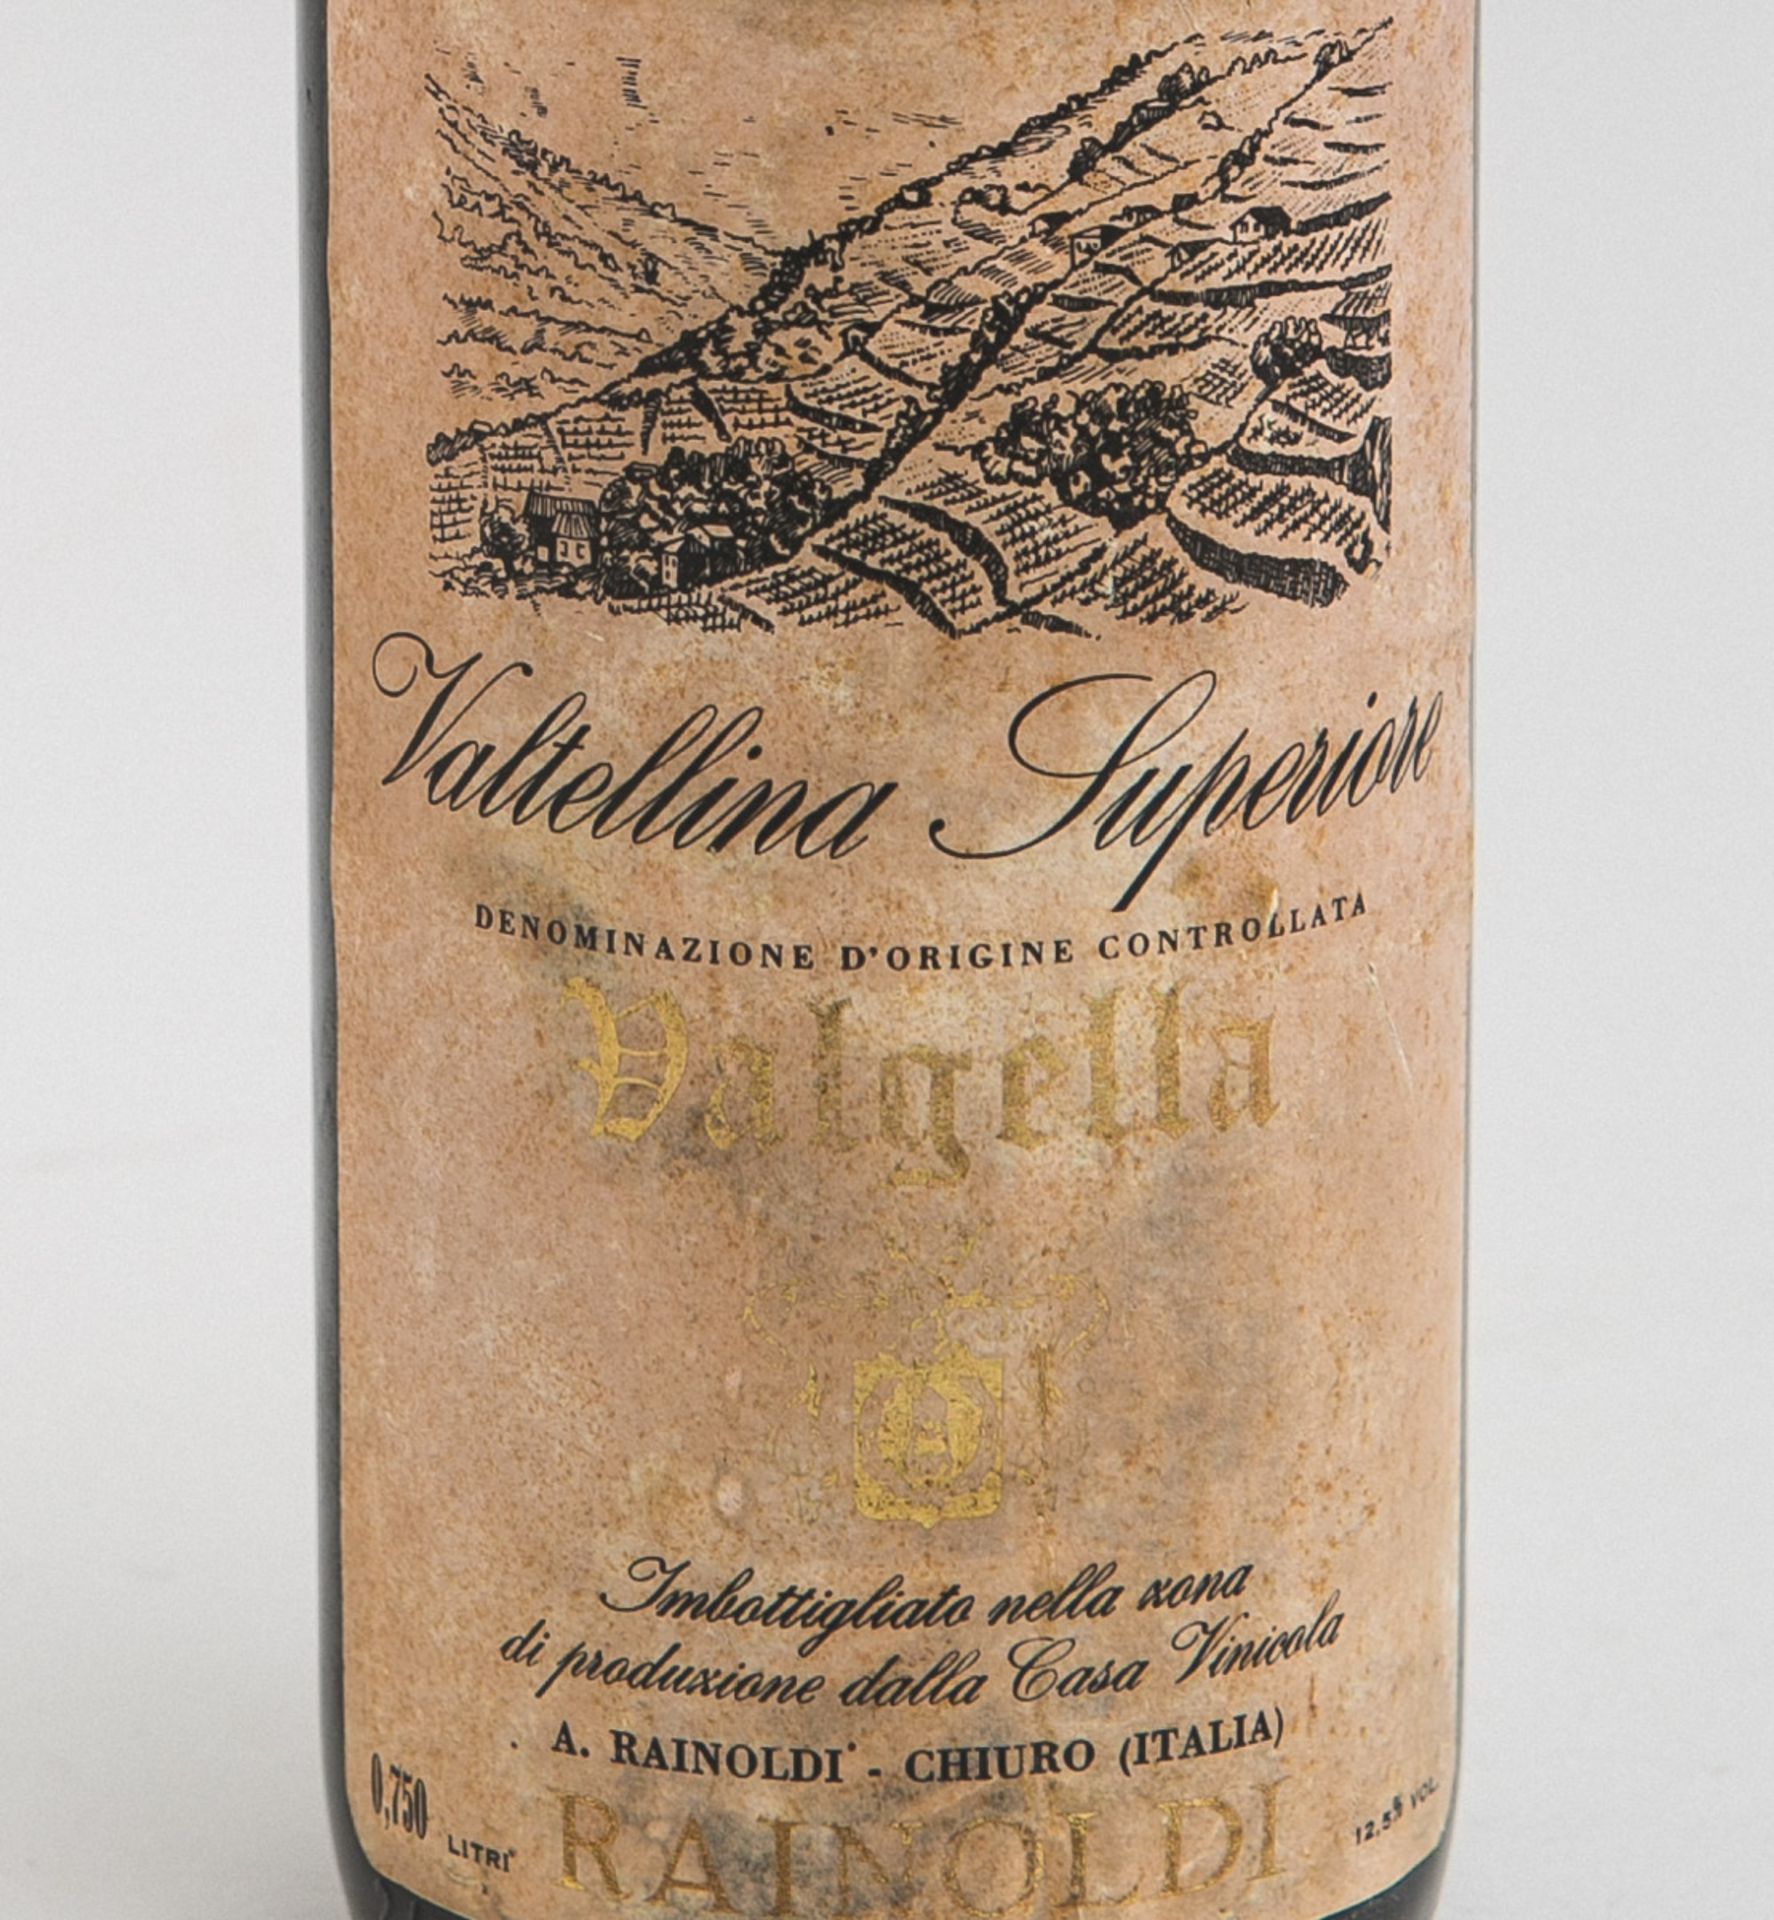 1 Flasche "Valgella Valtellina Superiore" Rotwein (Chiuro, Italien, 1977) - Bild 2 aus 2